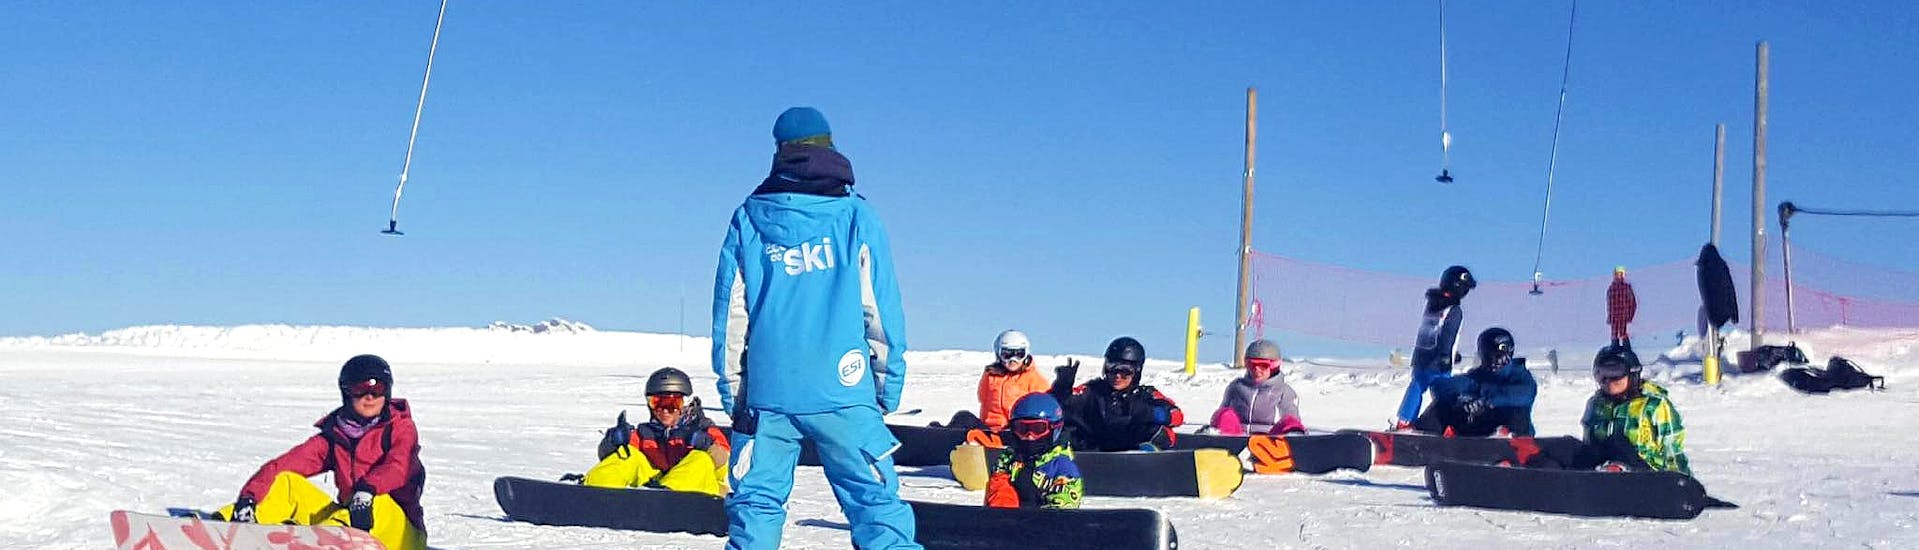 Die Schüler hören ihrem Lehrer während des Snowboardkurses für Kinder und Erwachsene für alle Levels bei ESI Grand Massif aufmerksam zu.